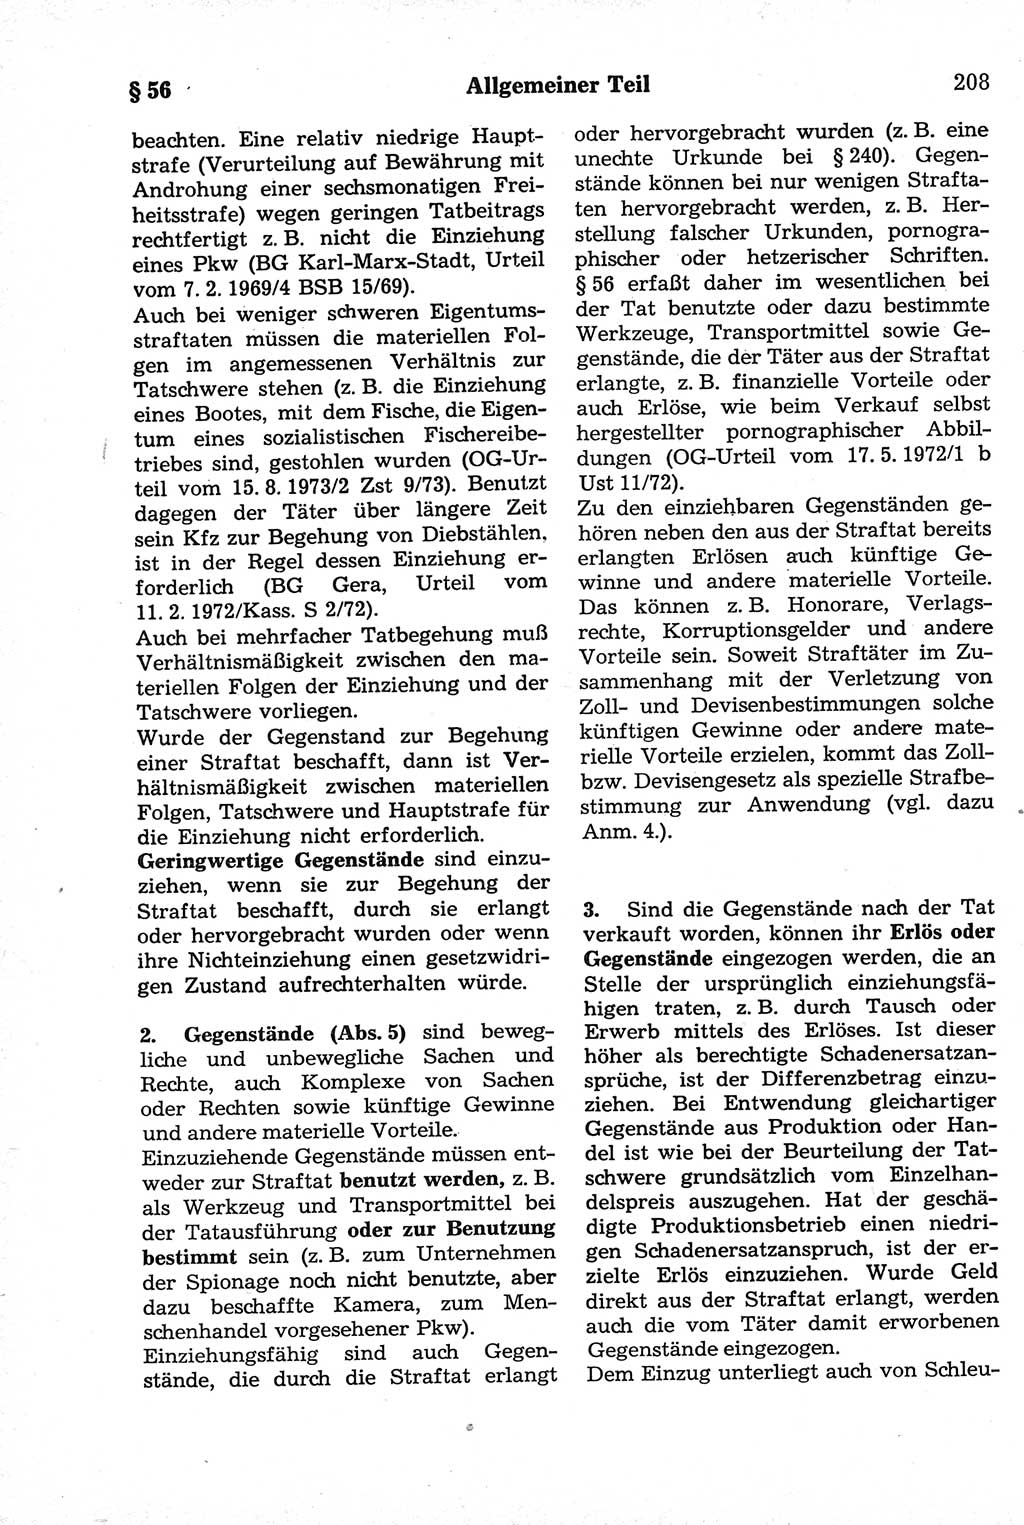 Strafrecht der Deutschen Demokratischen Republik (DDR), Kommentar zum Strafgesetzbuch (StGB) 1981, Seite 208 (Strafr. DDR Komm. StGB 1981, S. 208)